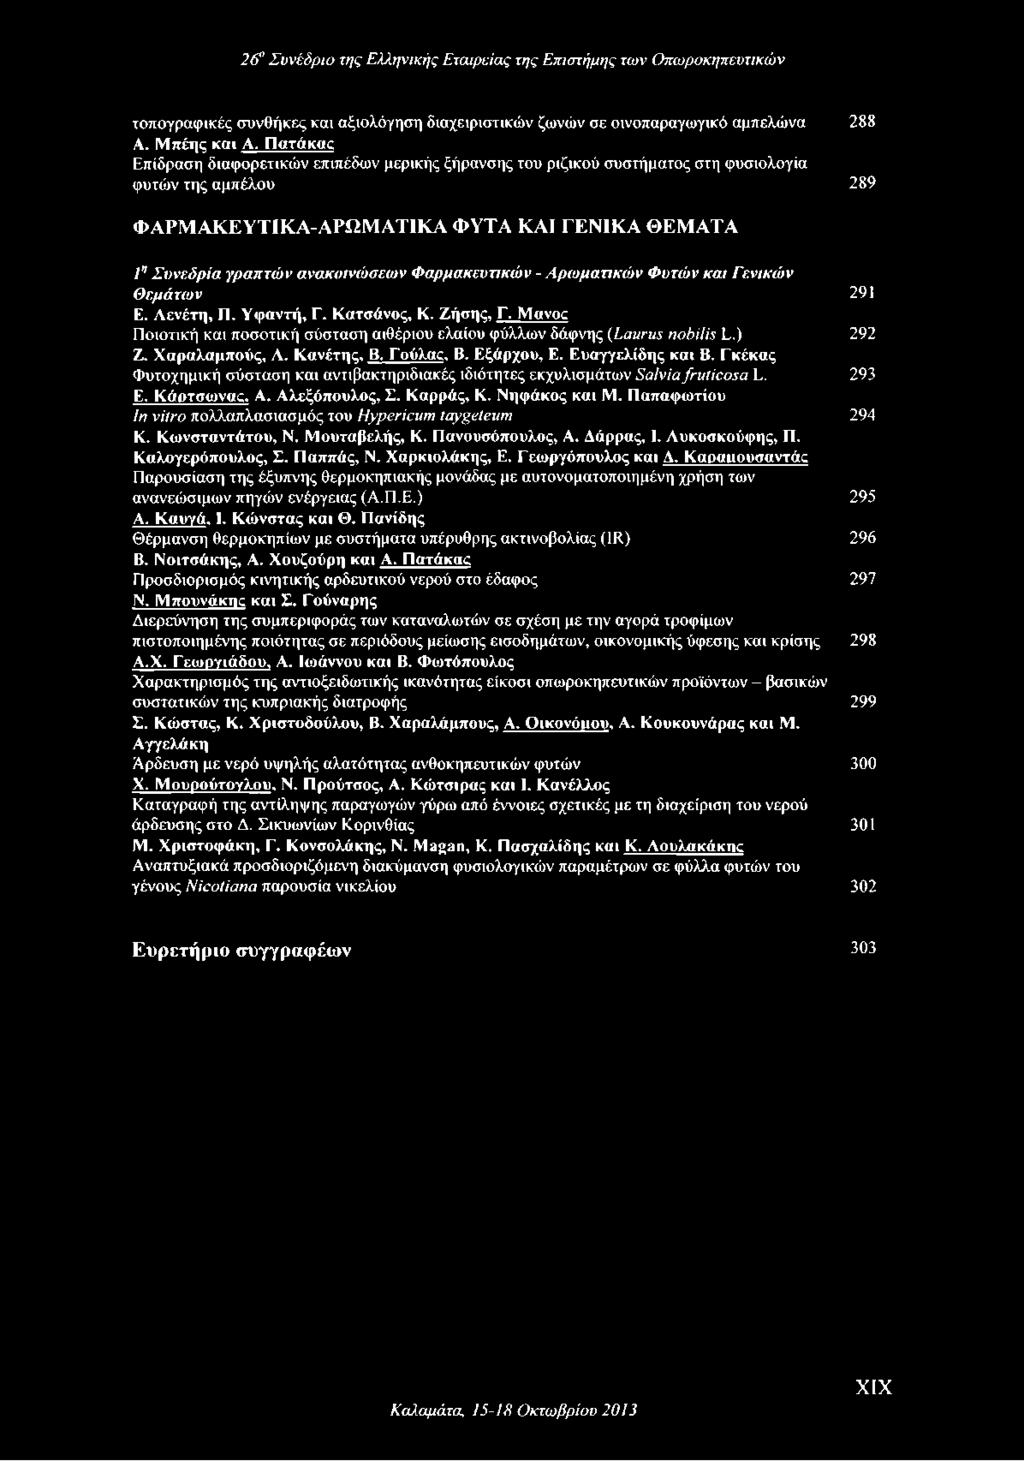 Φαρμακευτικών - Αρωματικών Φυτών και Γενικών Θεμάτων 291 Ε. Λενέτη, Π. Υφαντή, Γ. Κατσάνος, Κ. Ζήσης, Γ. Motvoc Ποιοτική και ποσοτική σύσταση αιθέριου ελαίου φύλλων δάφνης (Laurus nobilis L.) 292 Ζ.